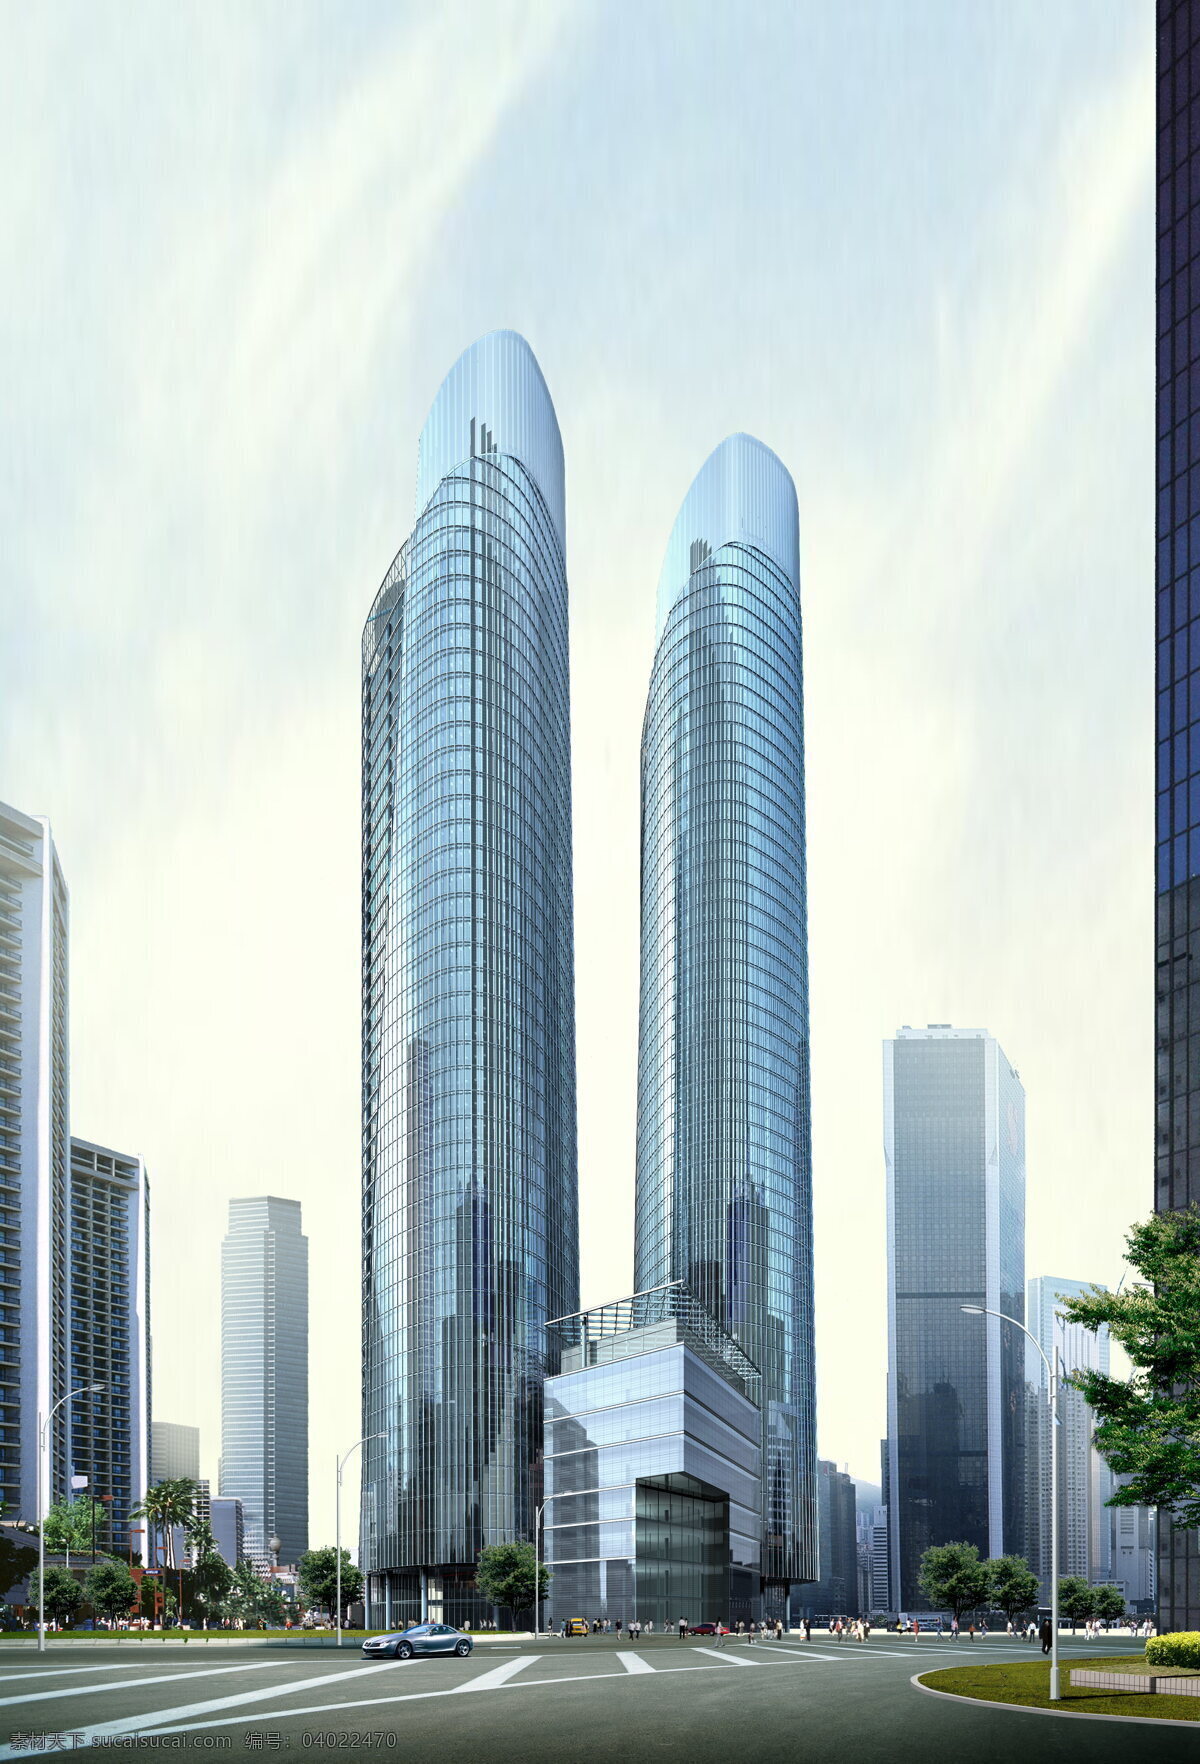 都市 商厦 大楼 效果图 设计素材 商业大厦 建筑设计 建筑装饰 白色